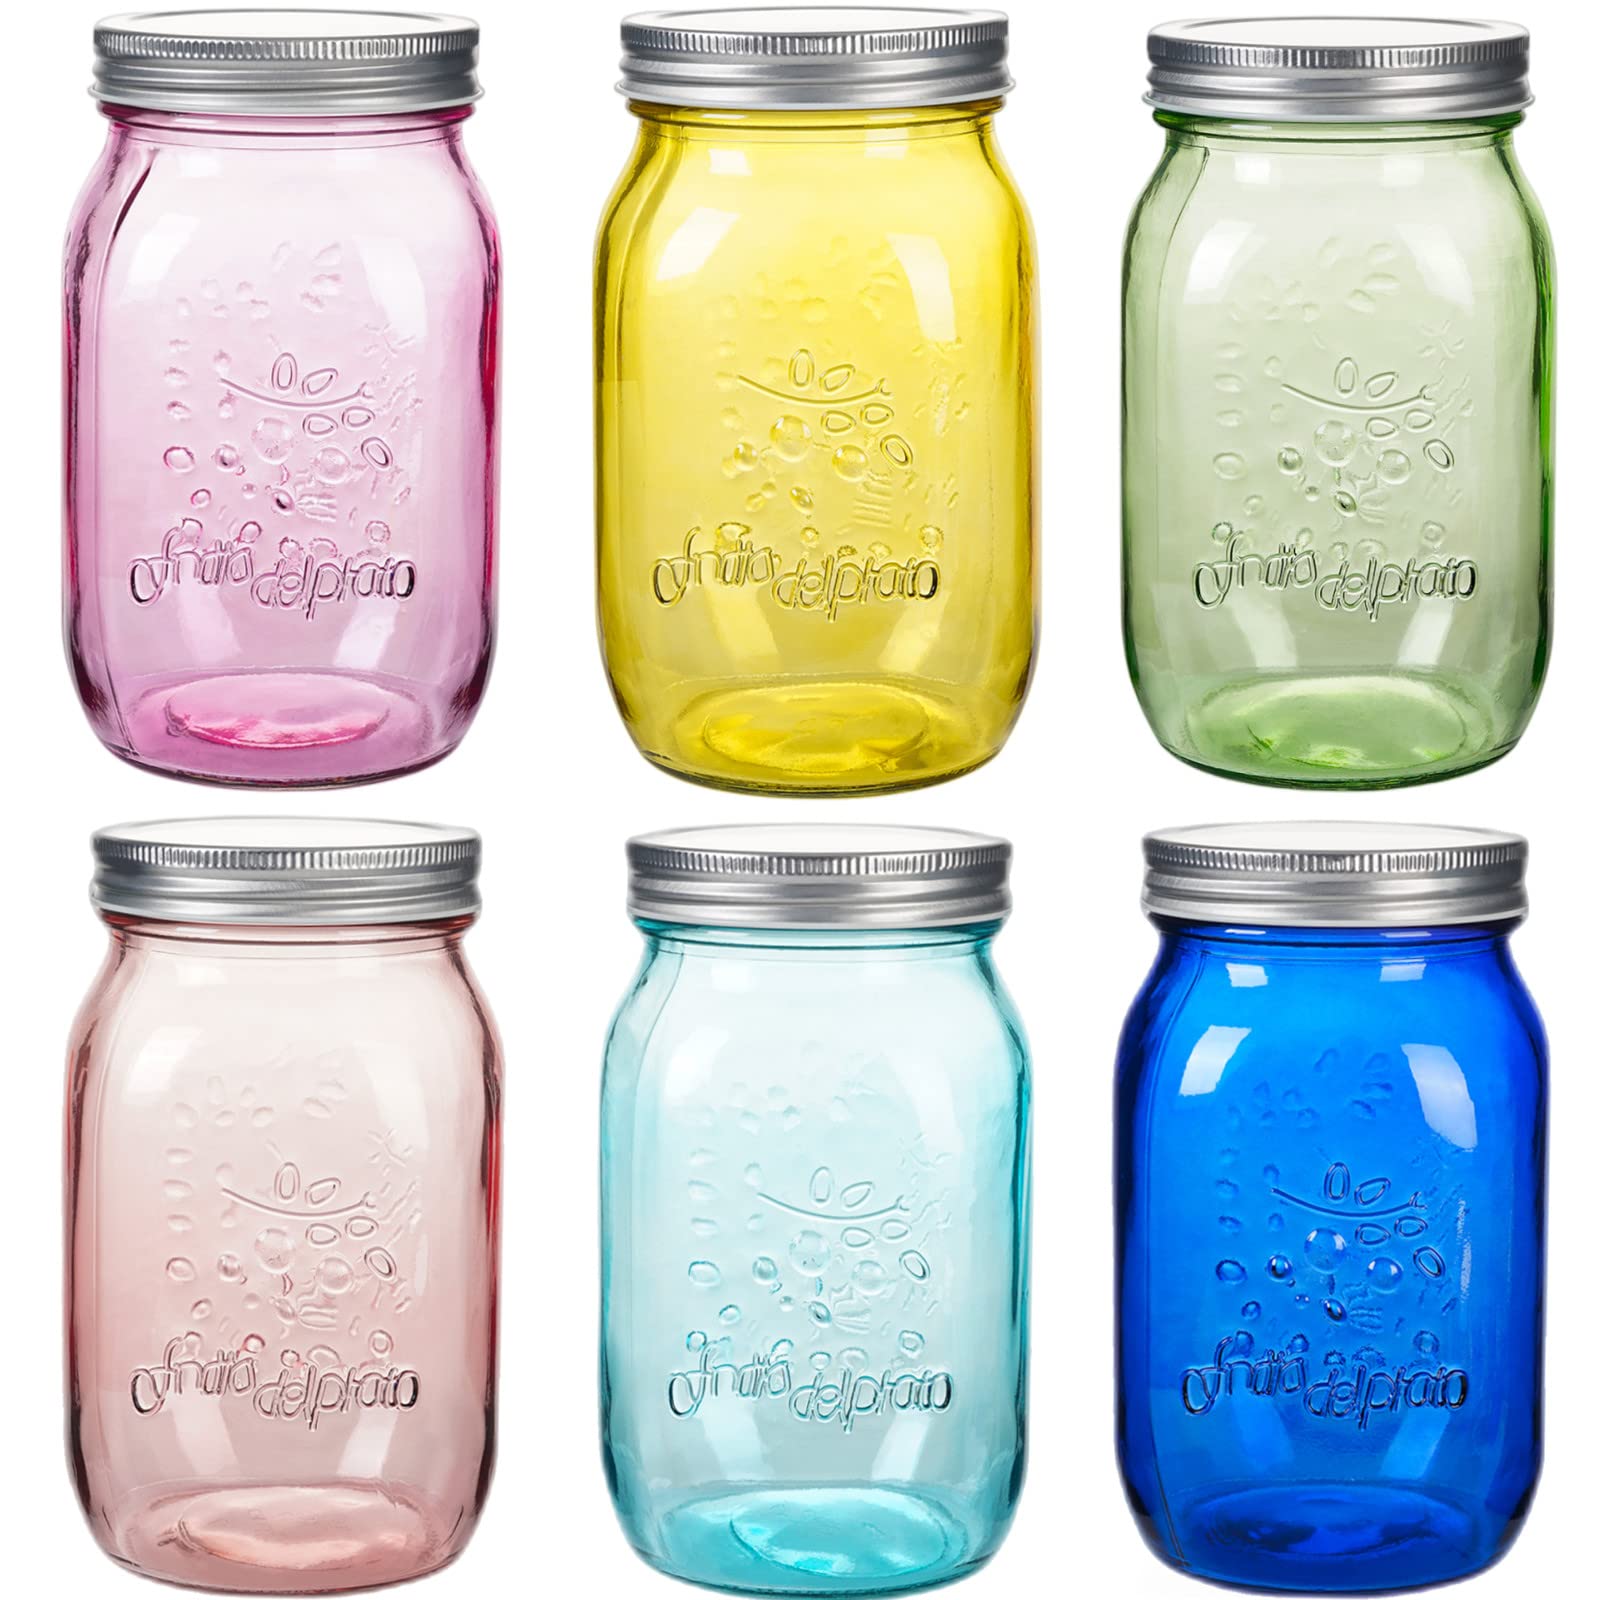 Canning glass jars, Spice Jars, Glass Spice Jars, 8 oz glass jars